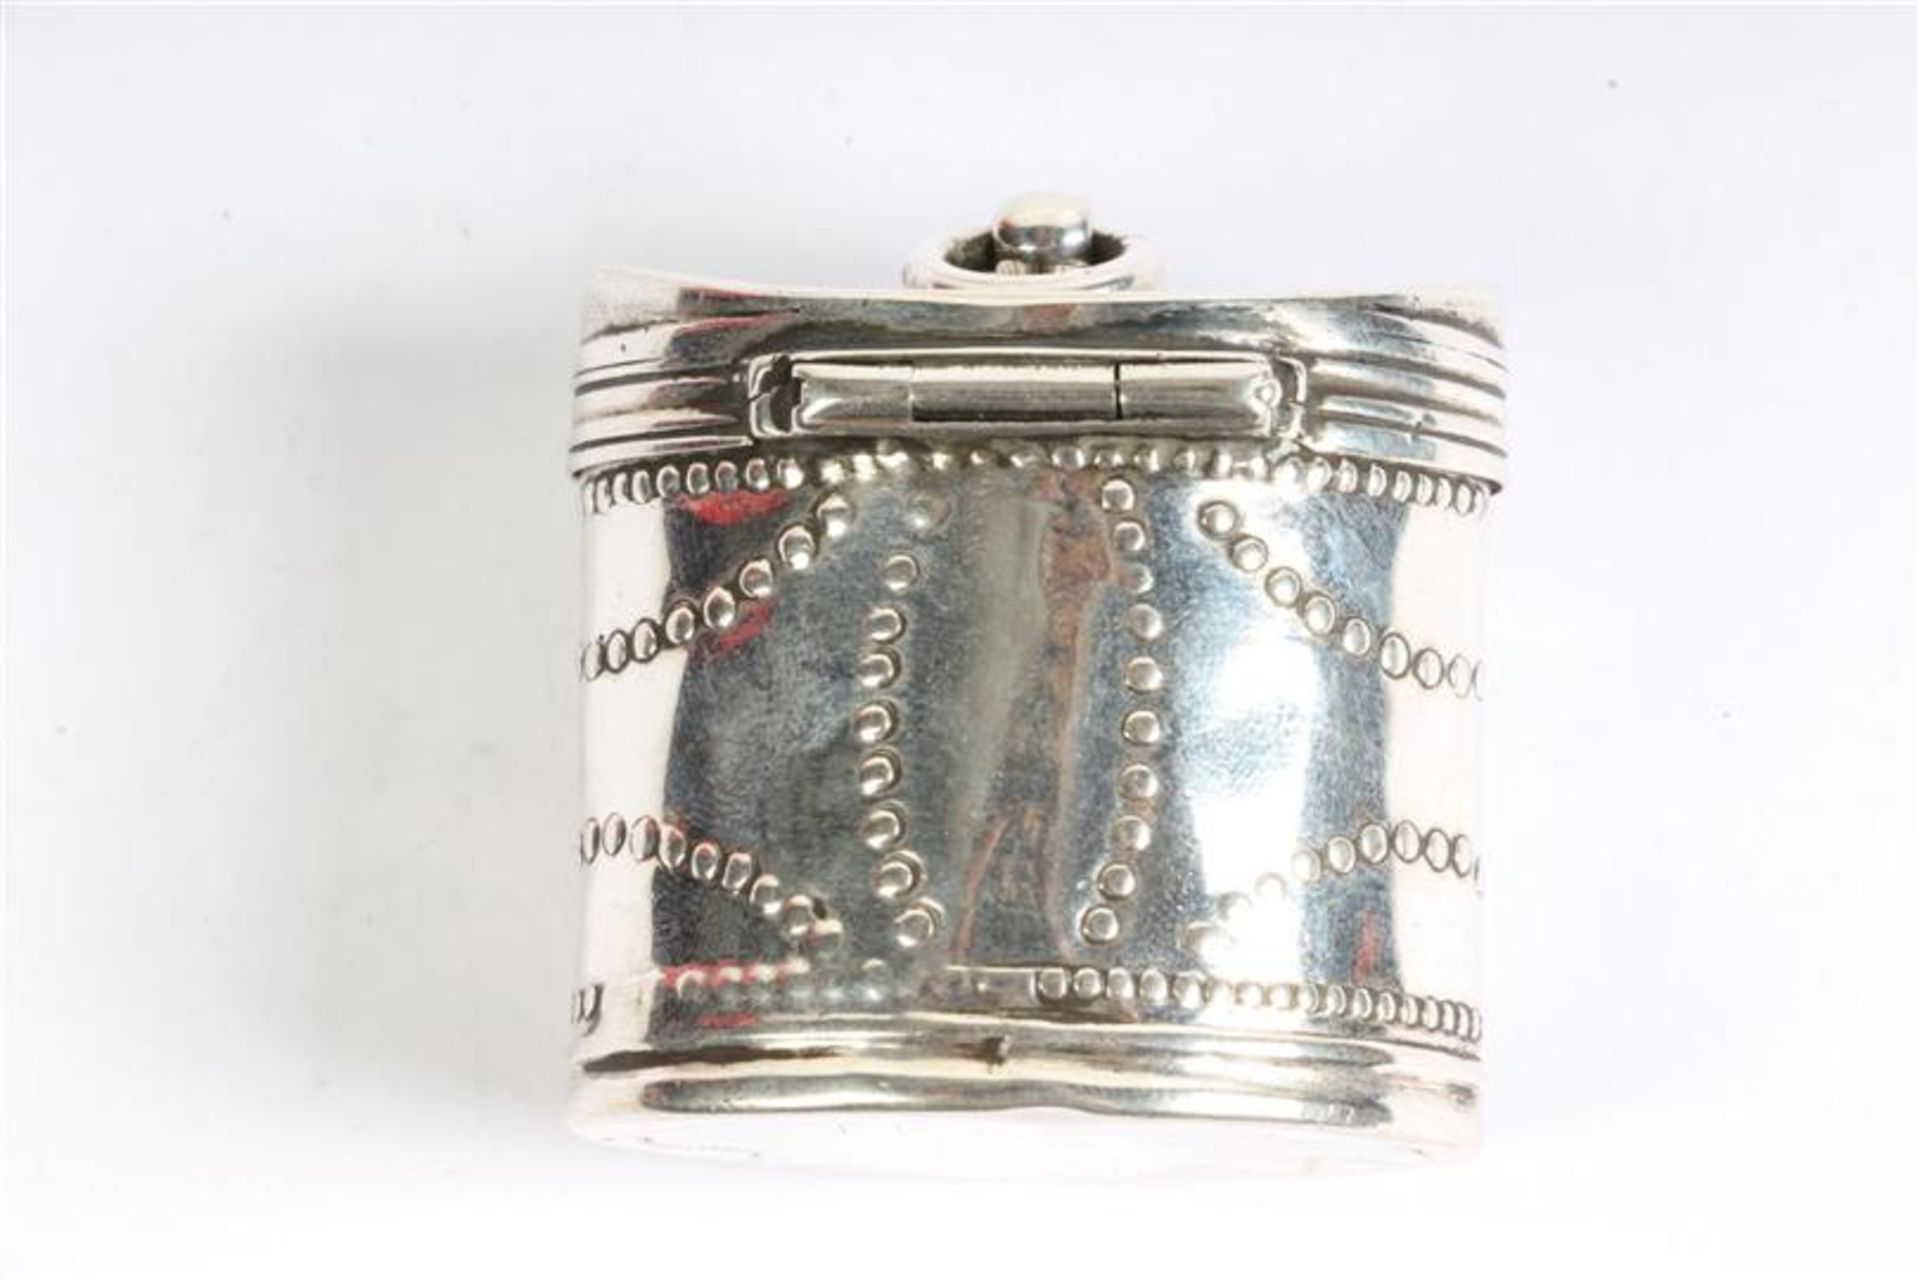 Zilveren lodereindoosje, Hollands gekeurd 1820. Gewicht: 24.6 g. - Bild 2 aus 3